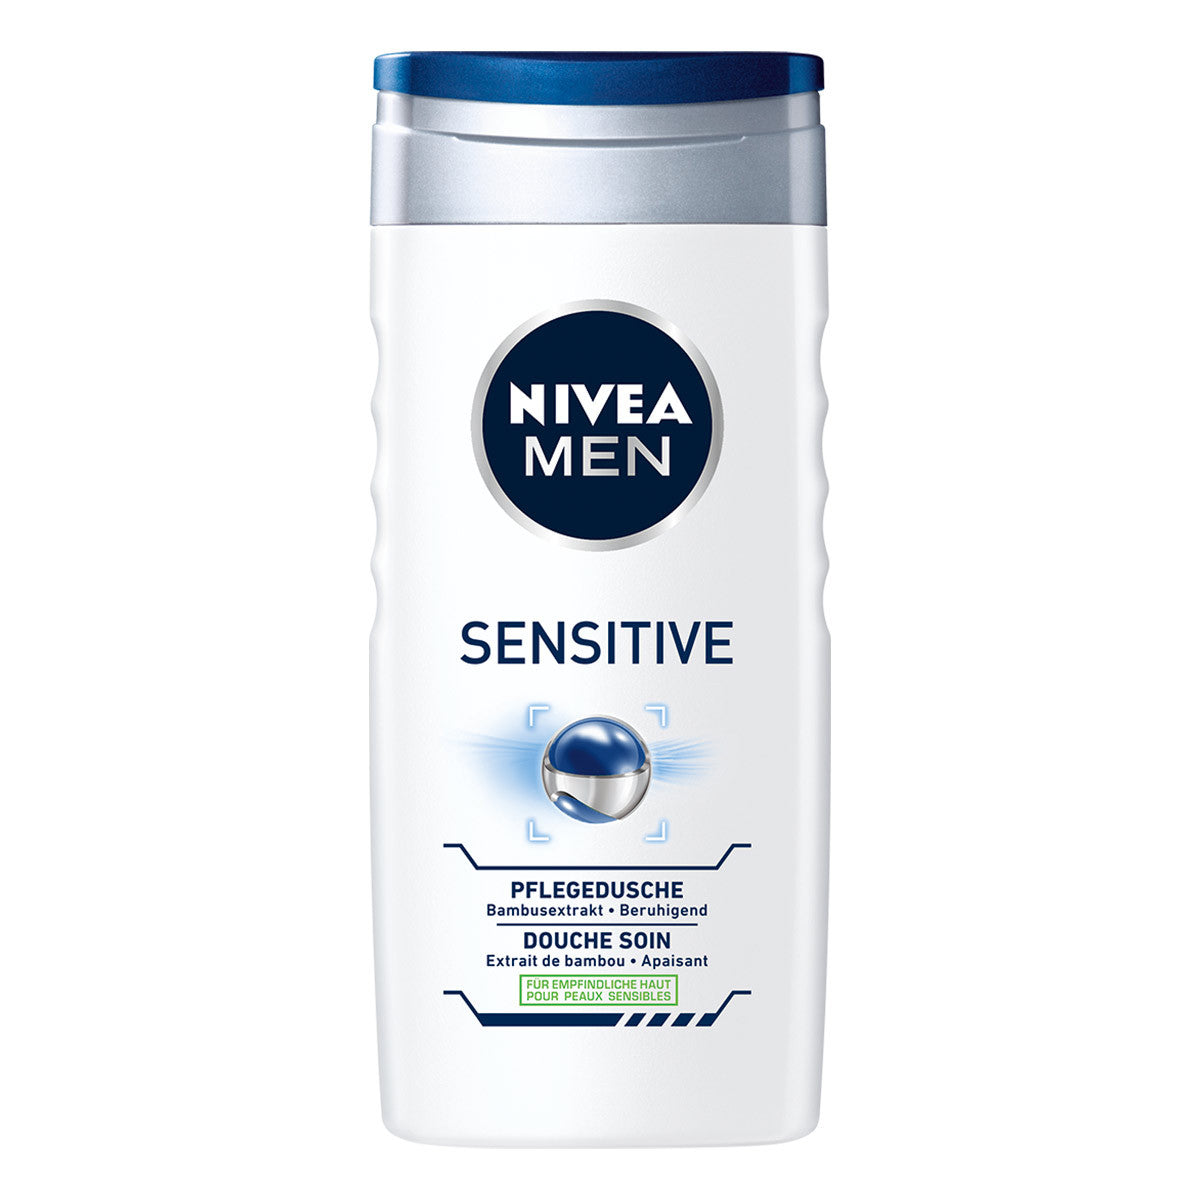 Primary image of Sensitive Shower Gel For Men